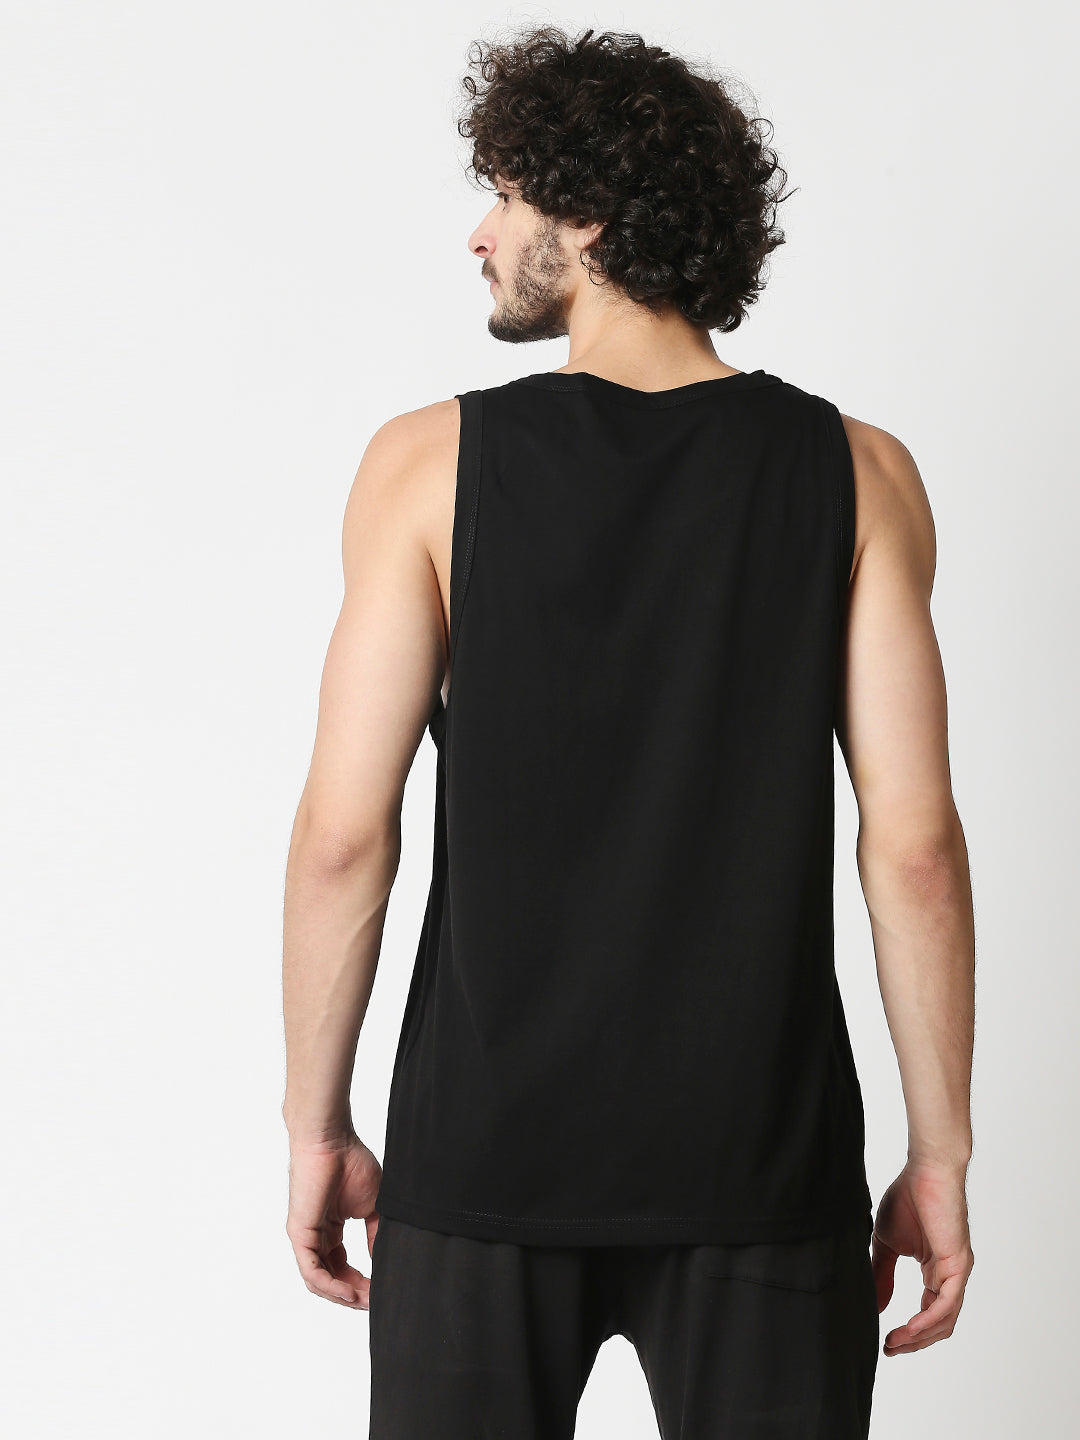 Buy Men's Regular Fit Chest print Sleeveless Black Vest